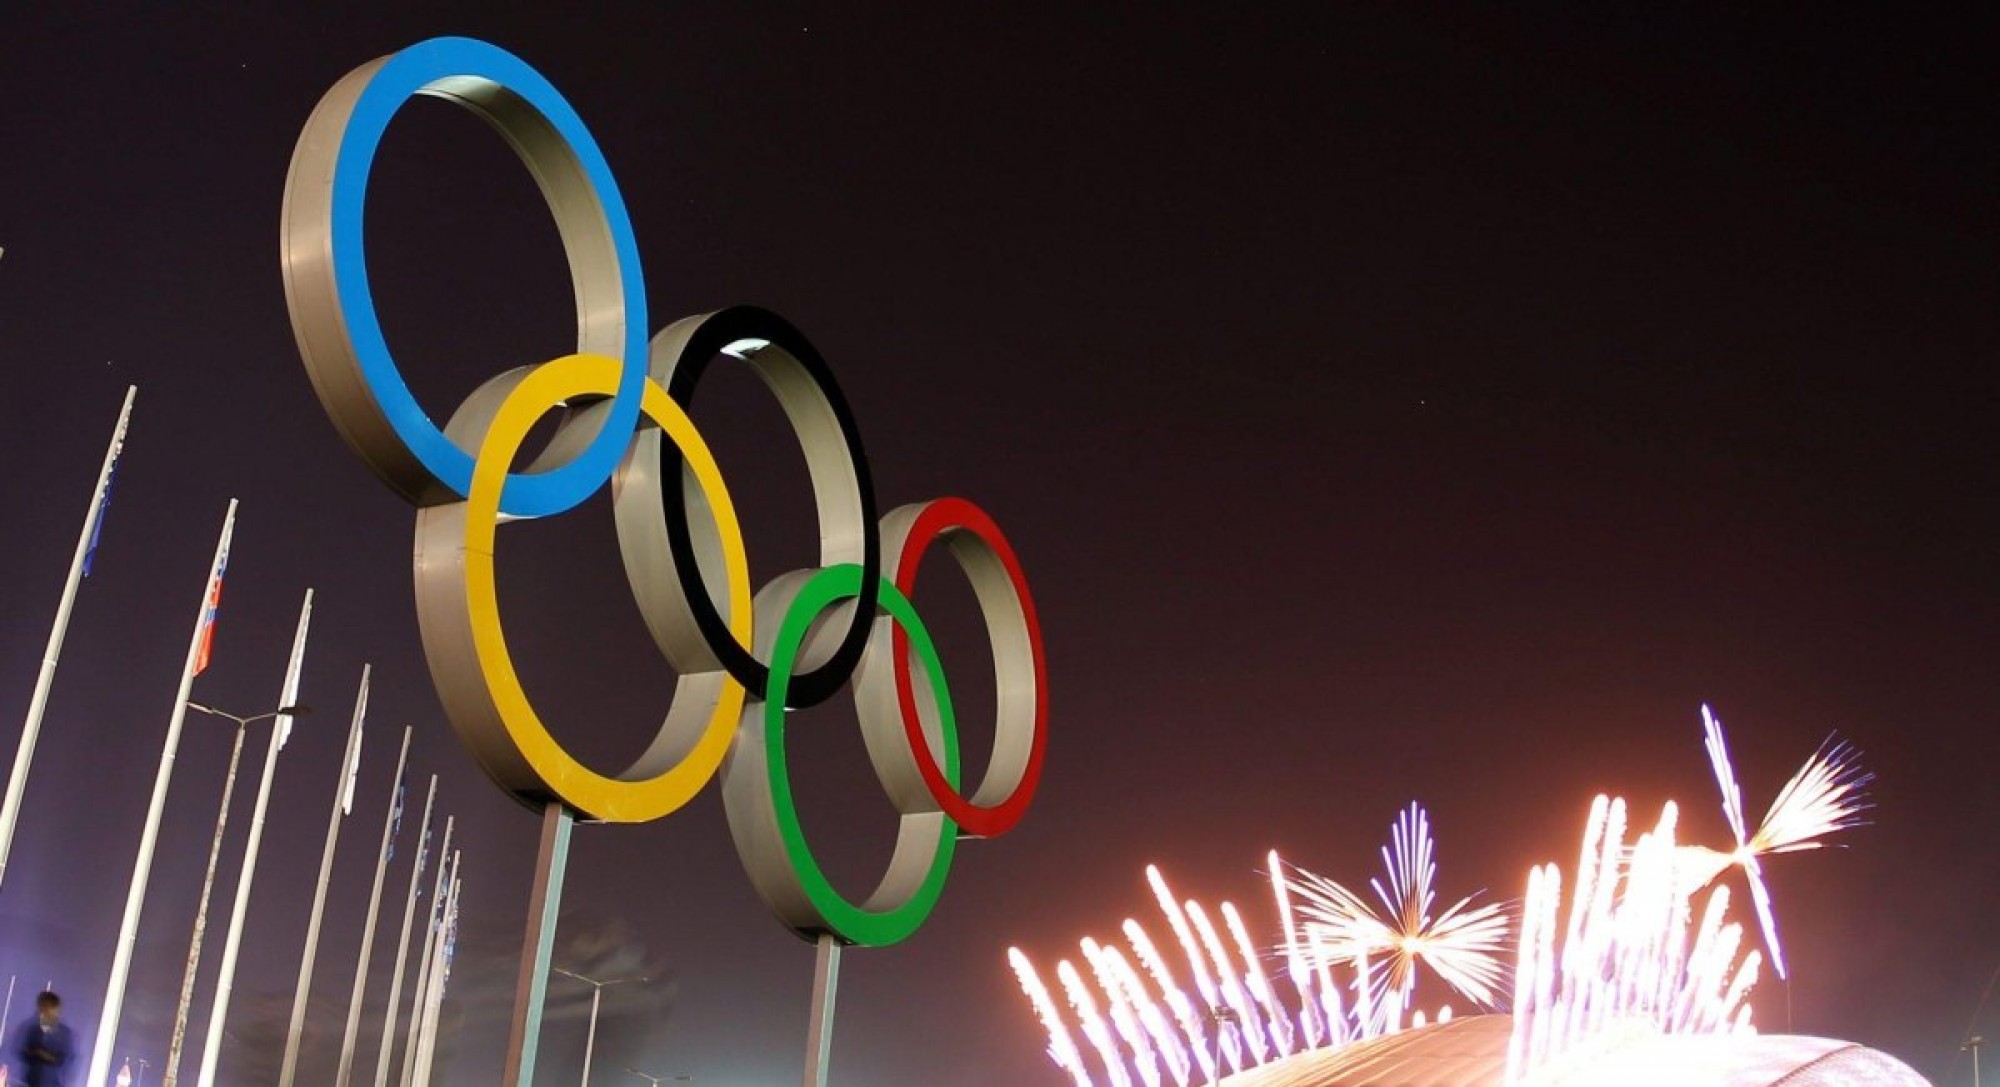 Отечественные телеканалы получили право транслировать XXIII Олимпийские игры - Даурен Абаев 